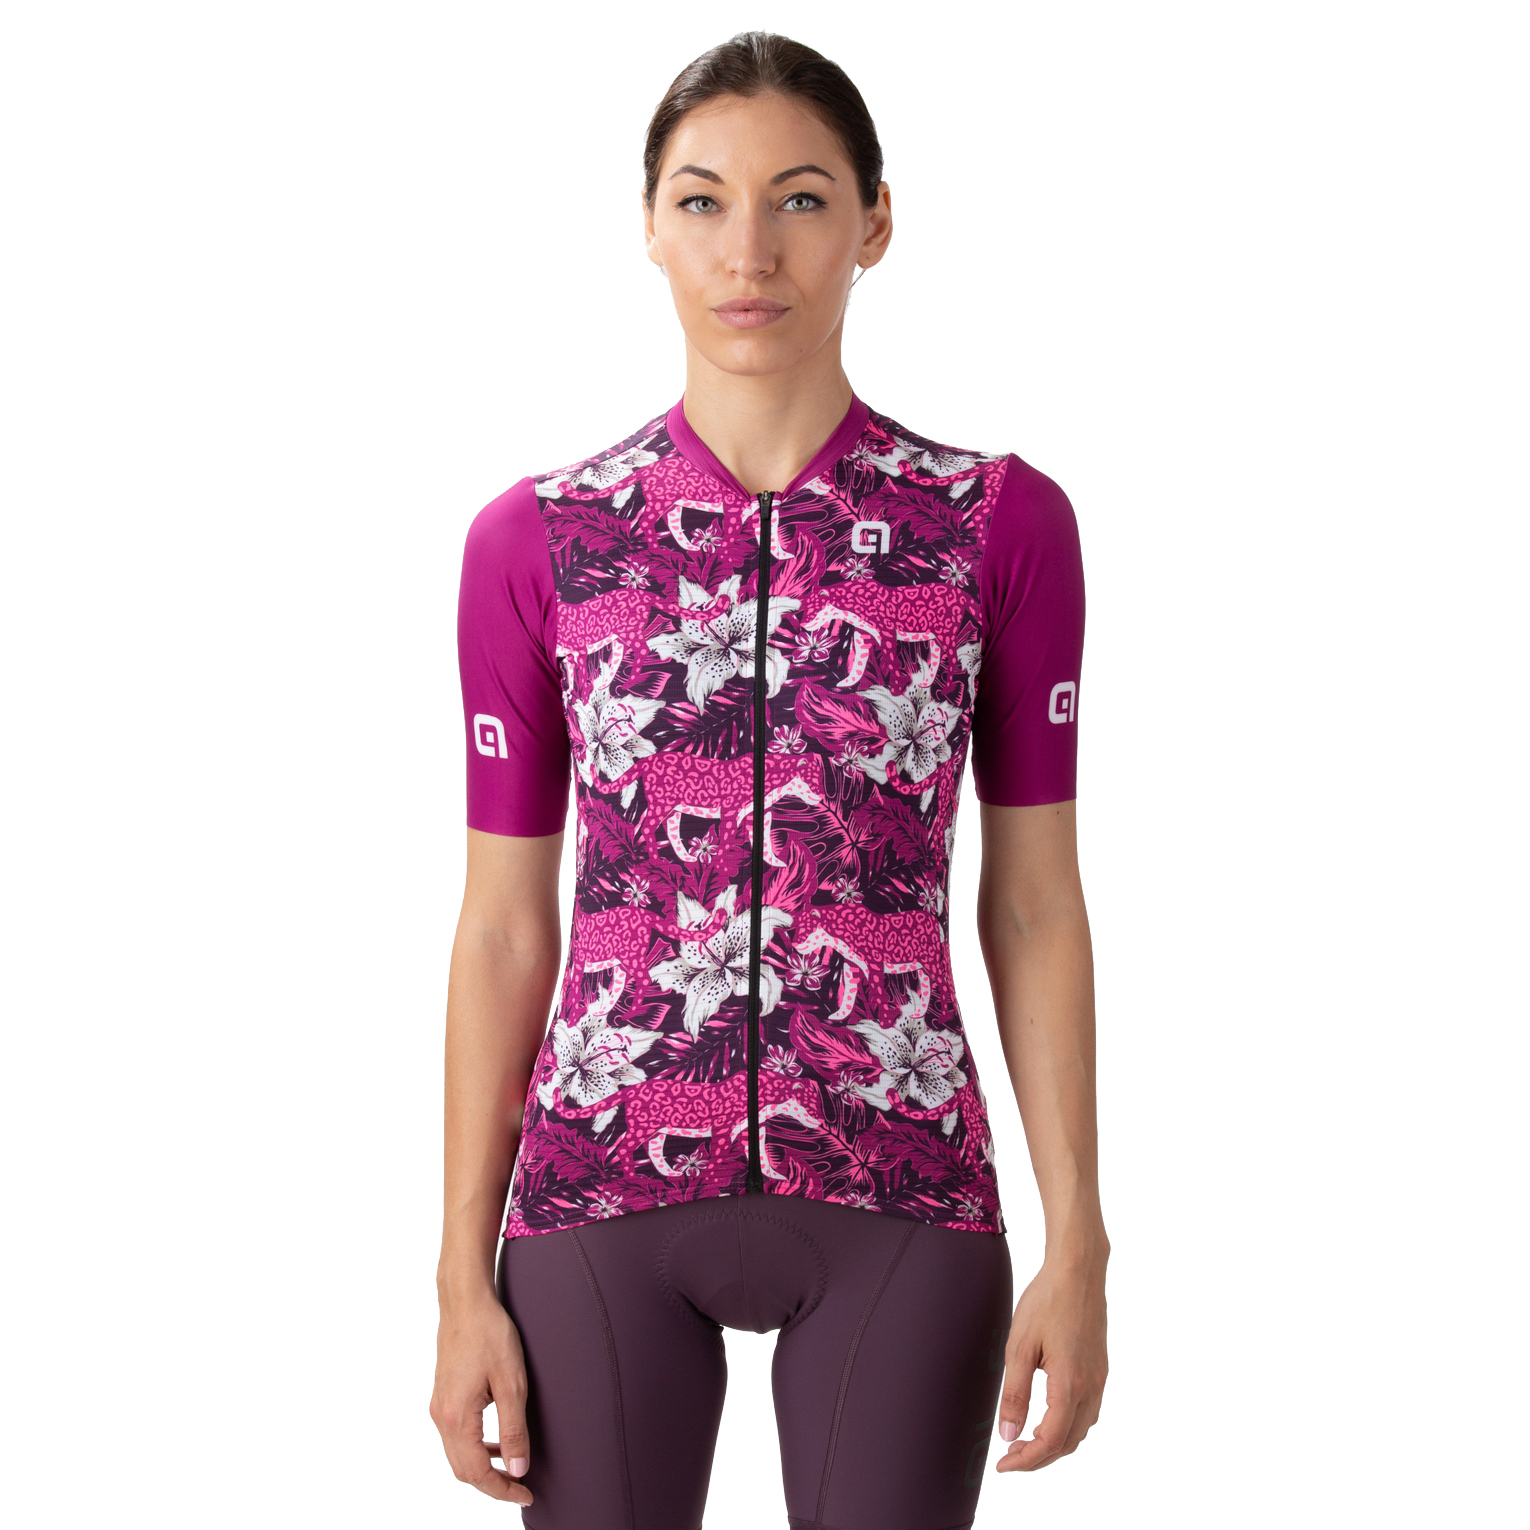 Productfoto van Alé PR-E Hibiscus Shirt met Korte Mouwen Dames - paars